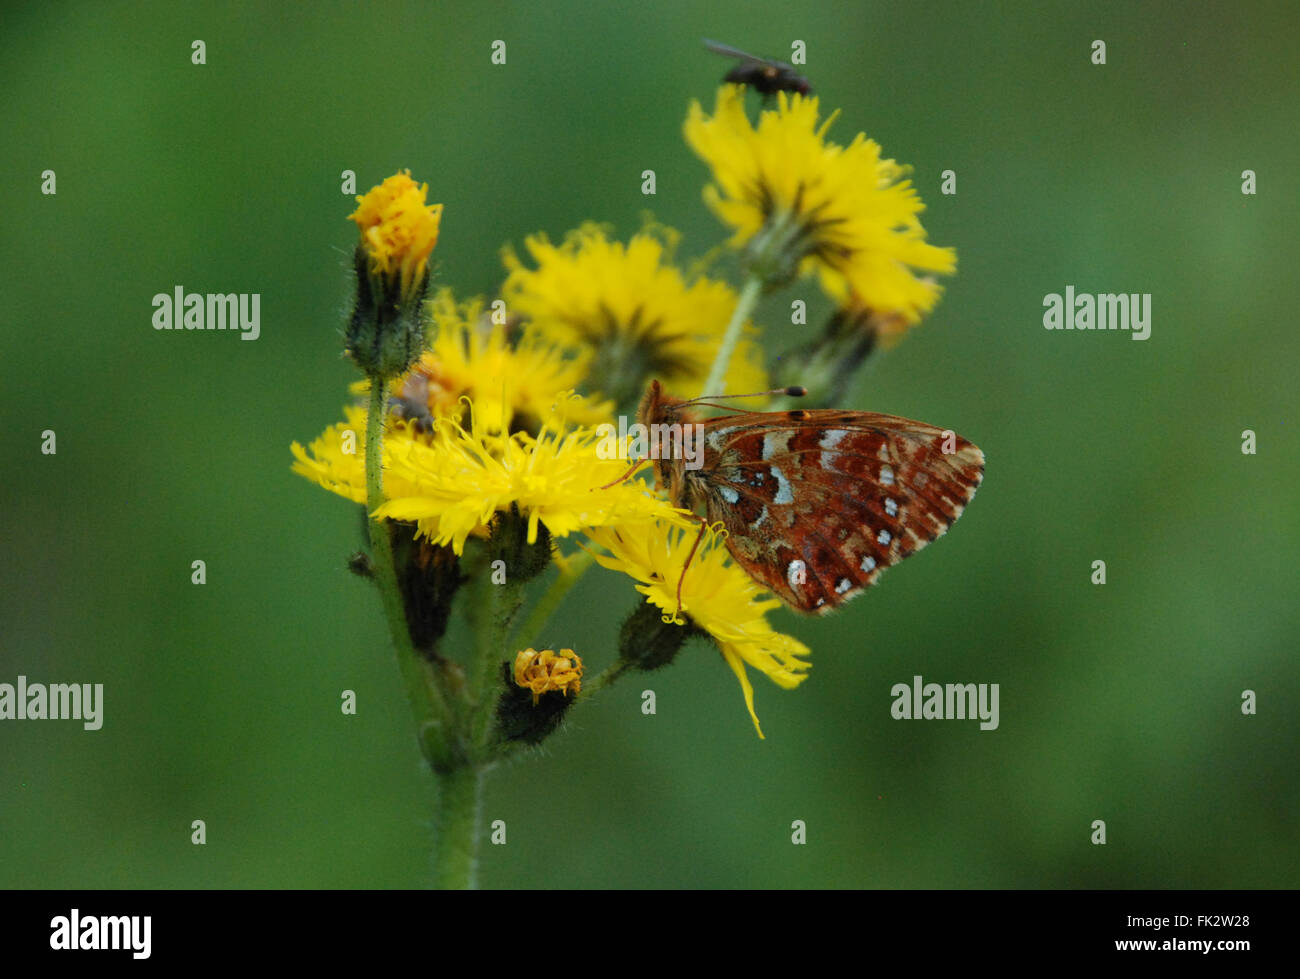 Cranberry fritillary butterfly (Boloria aquilonaris) sul fiore giallo in Finlandia Foto Stock